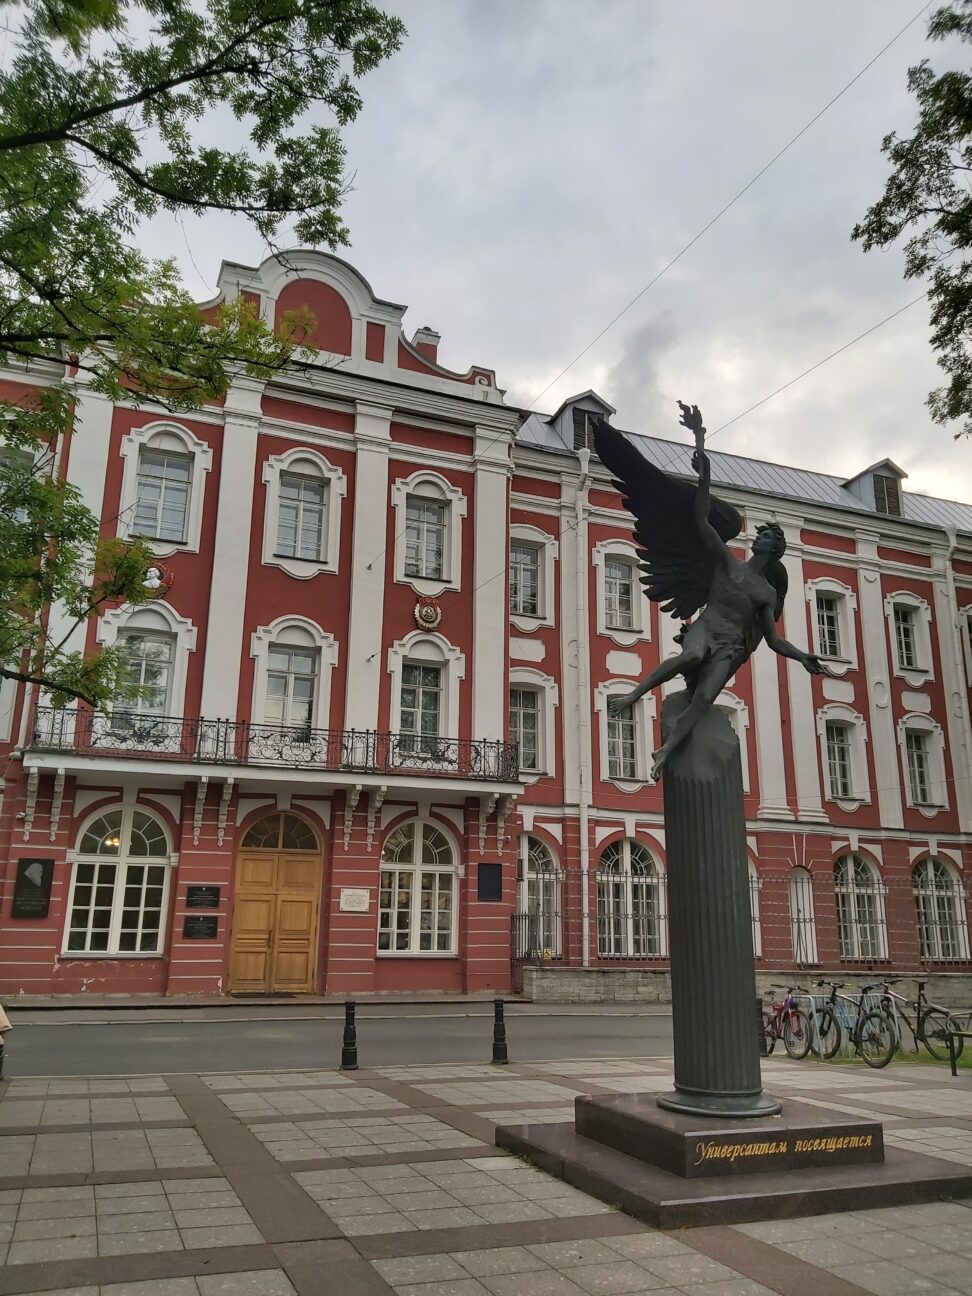 Перед входом стоит памятник «Крылатый гений» — обобщённый образ студента СПбГУ